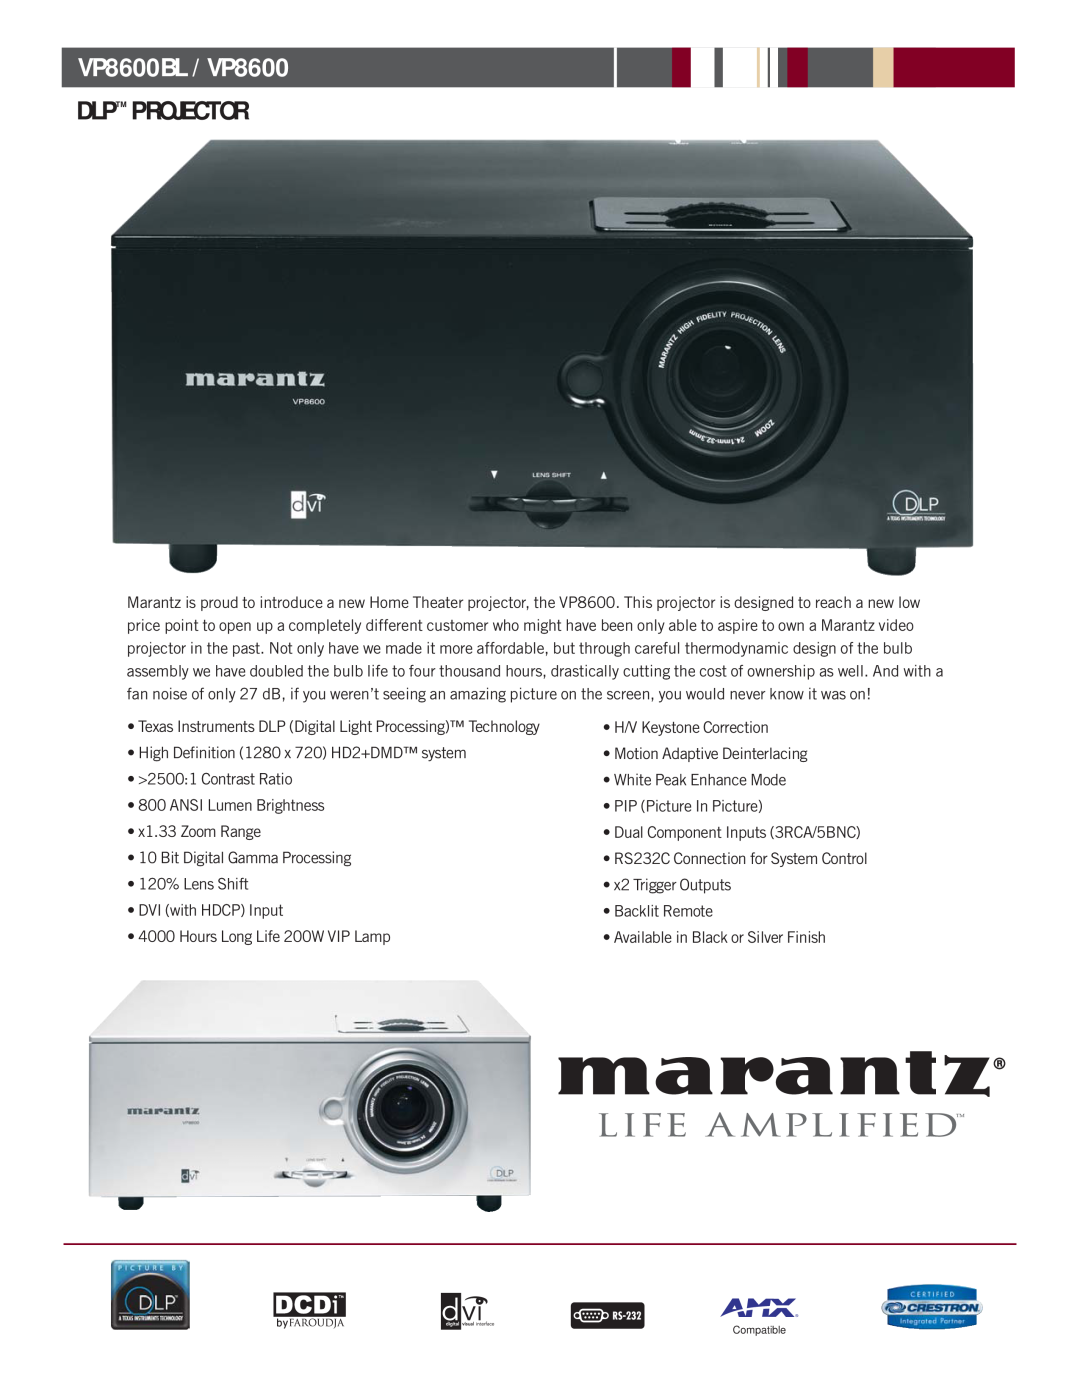 Marantz manual VP8600BL / VP8600, Dlp Projector 